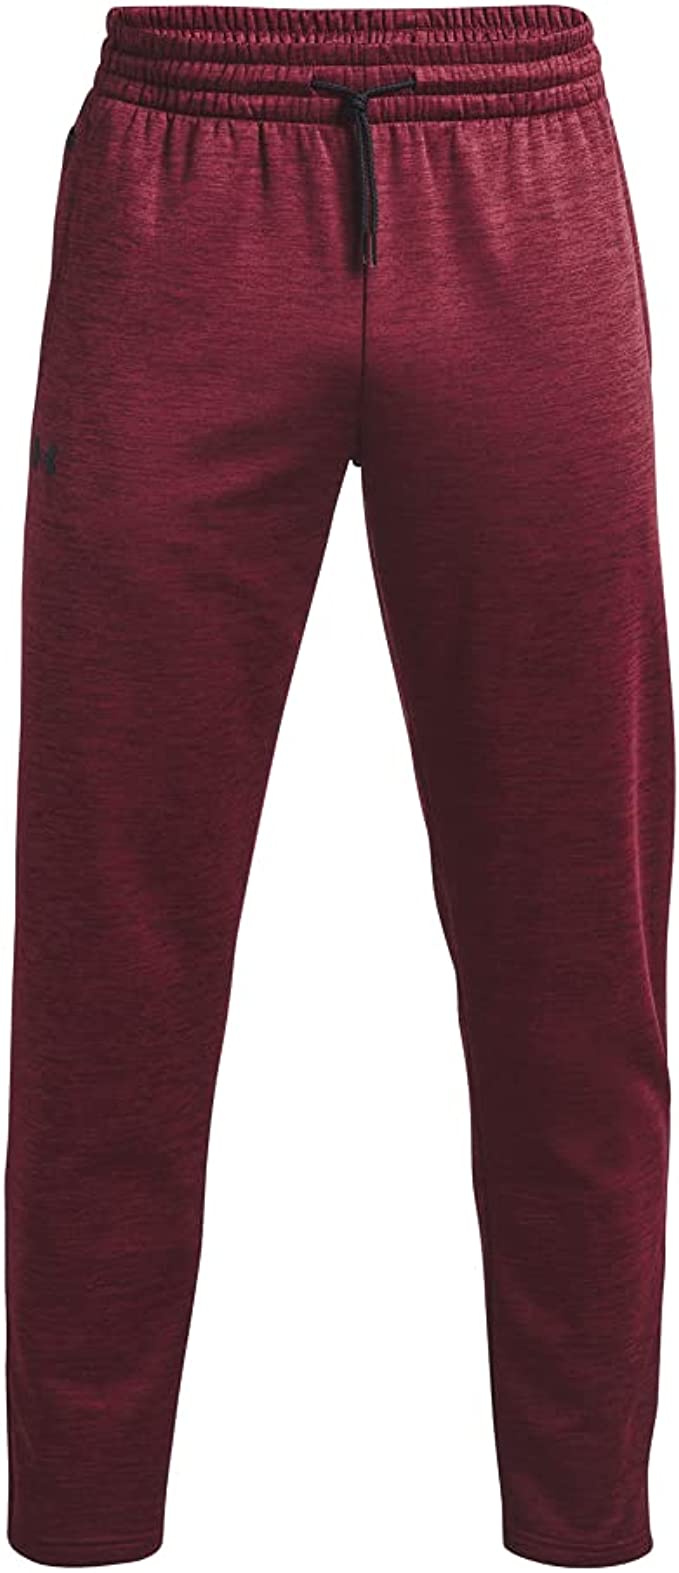 Men's UA Outlet - Pants